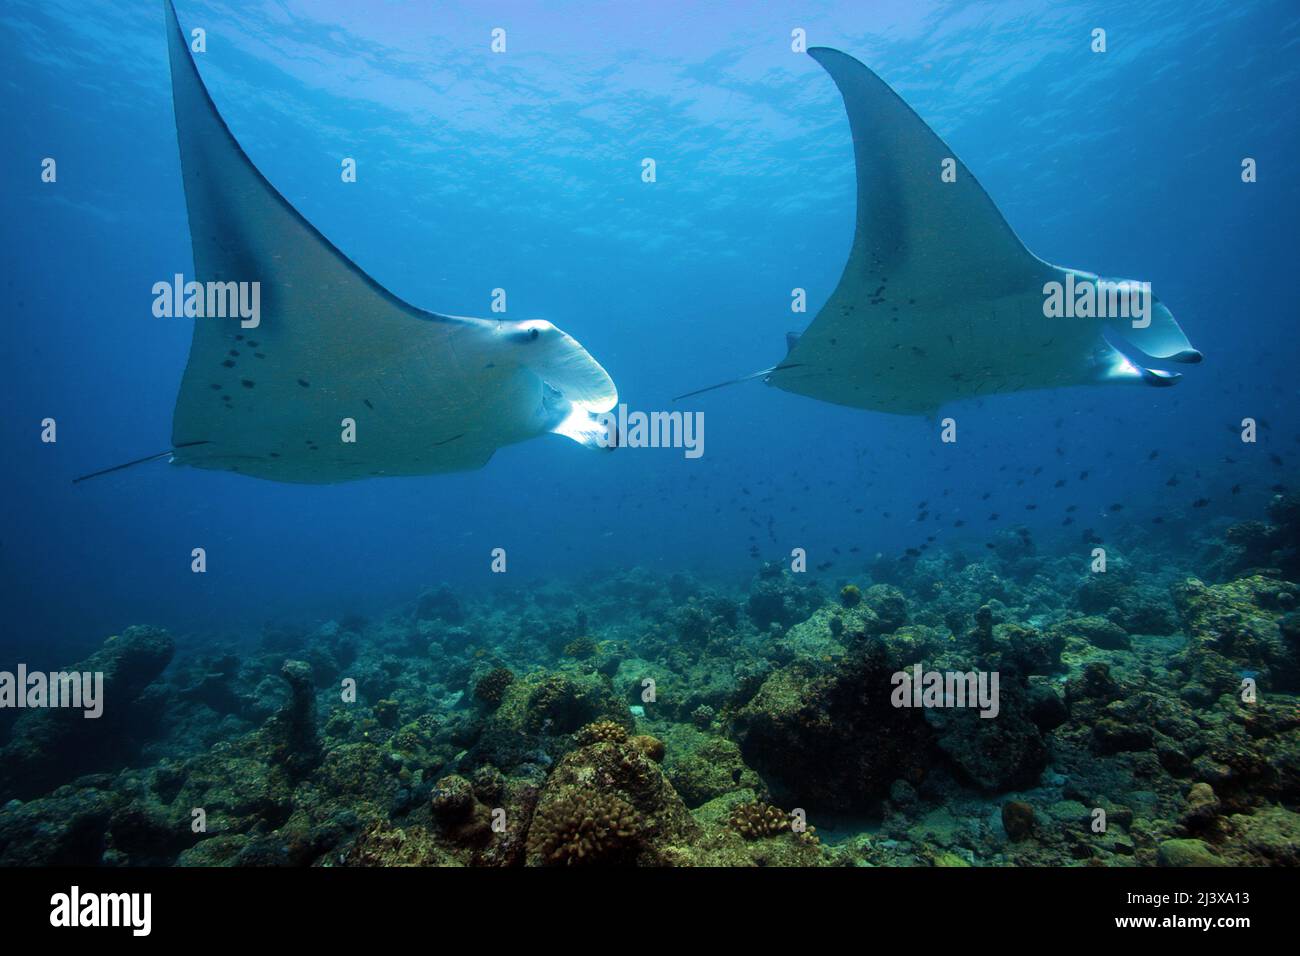 Manta ray océanique géant ou manta ray géant (Manta birostris), dans l'eau bleue, Ari Atoll, Maldives, Océan Indien, Asie Banque D'Images